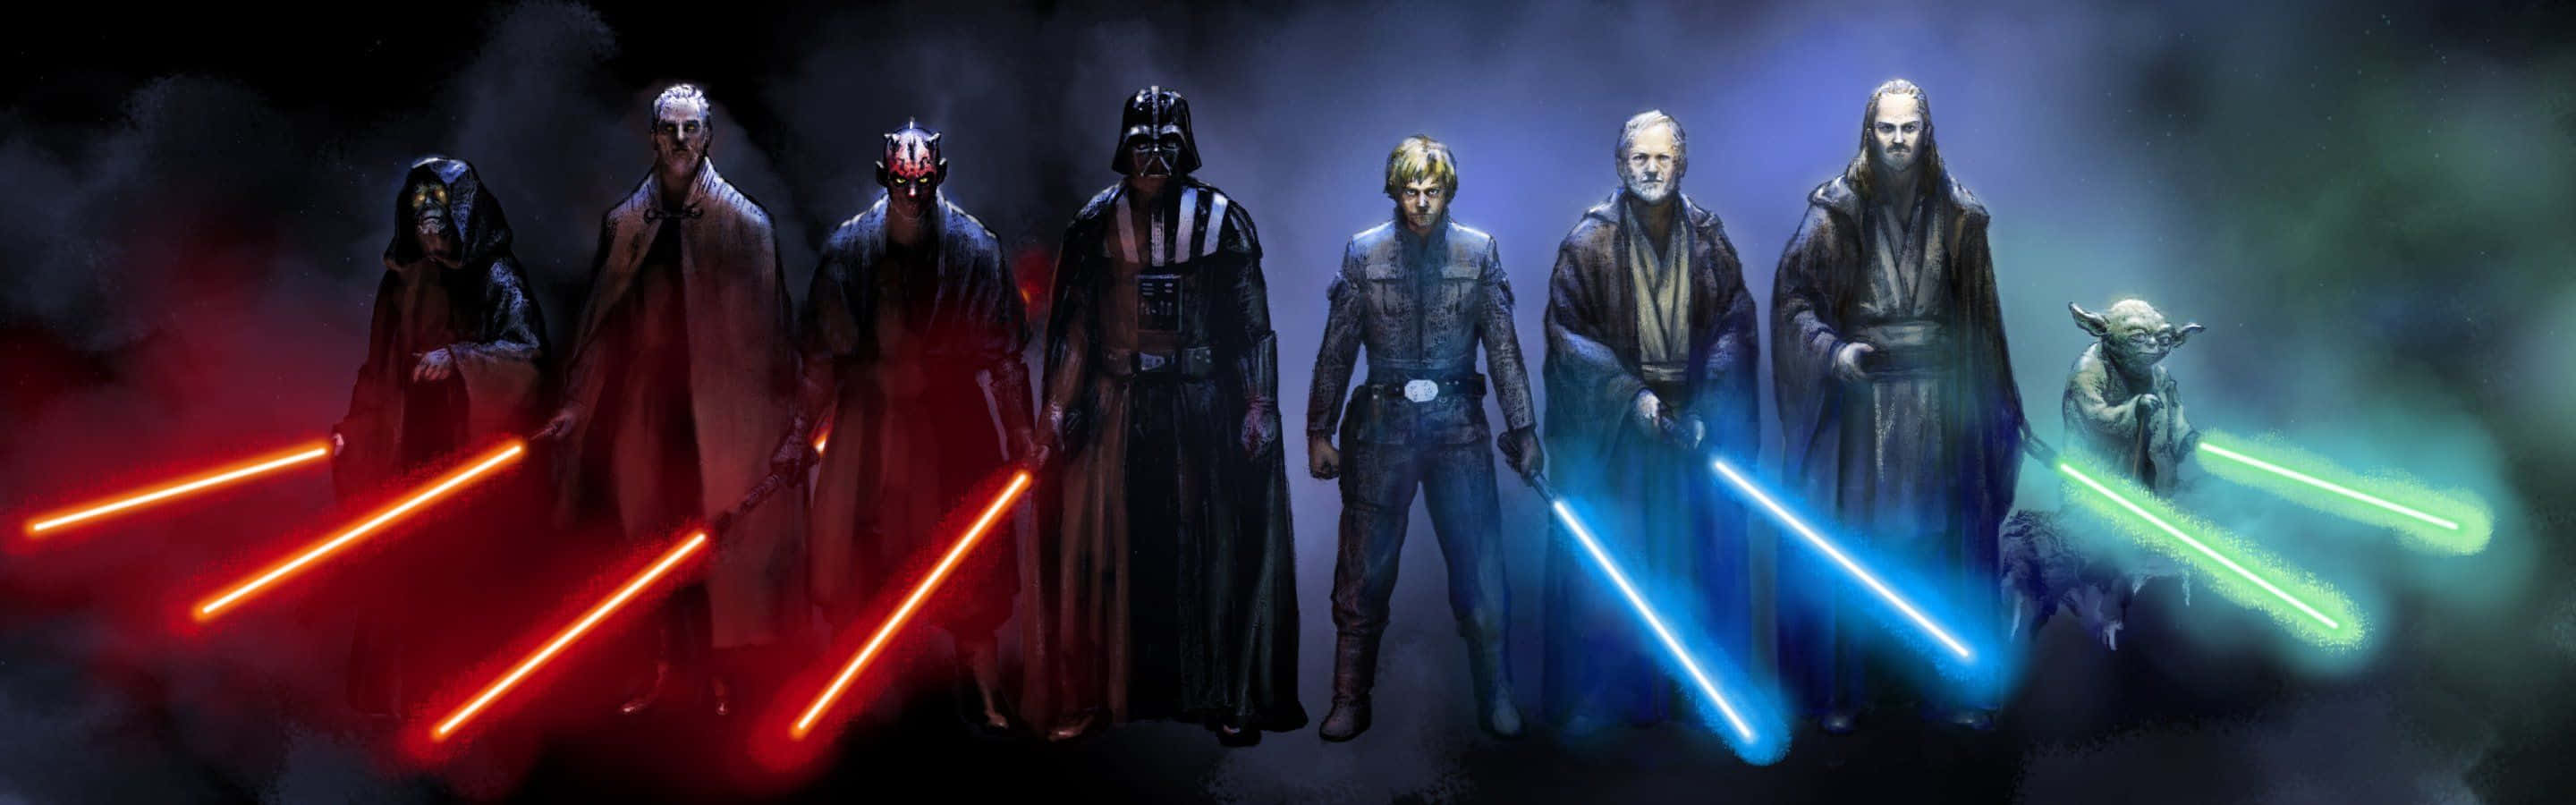 Personajesde Star Wars Sith Y Jedi Increíbles Para Doble Monitor Fondo de pantalla